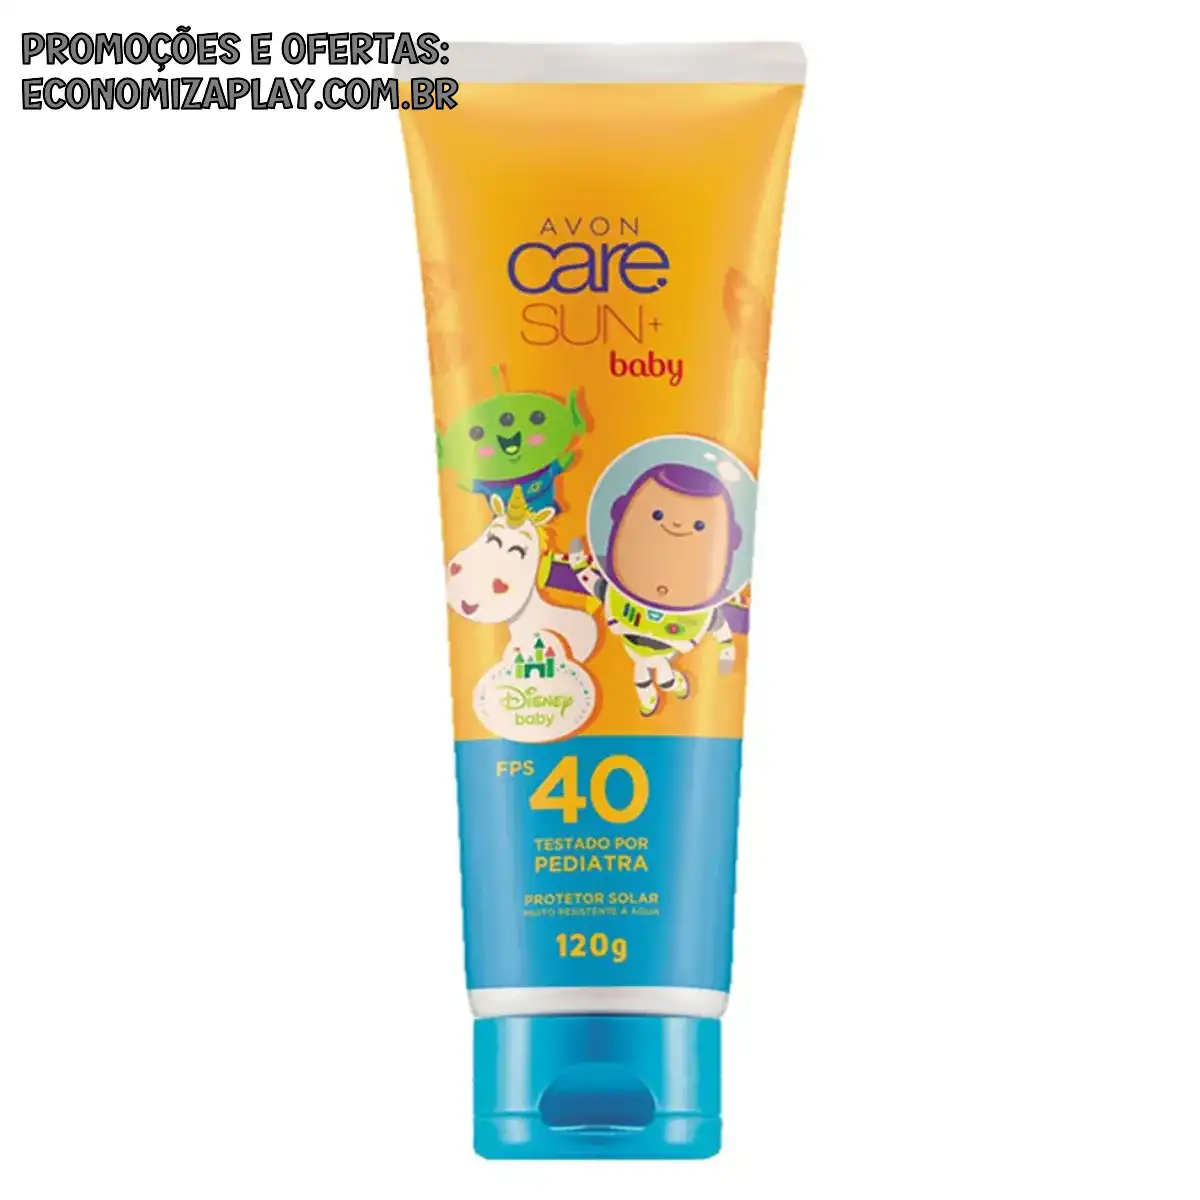 Avon Protetor Solar Infantil Baby Care Sun FPS 40 120g